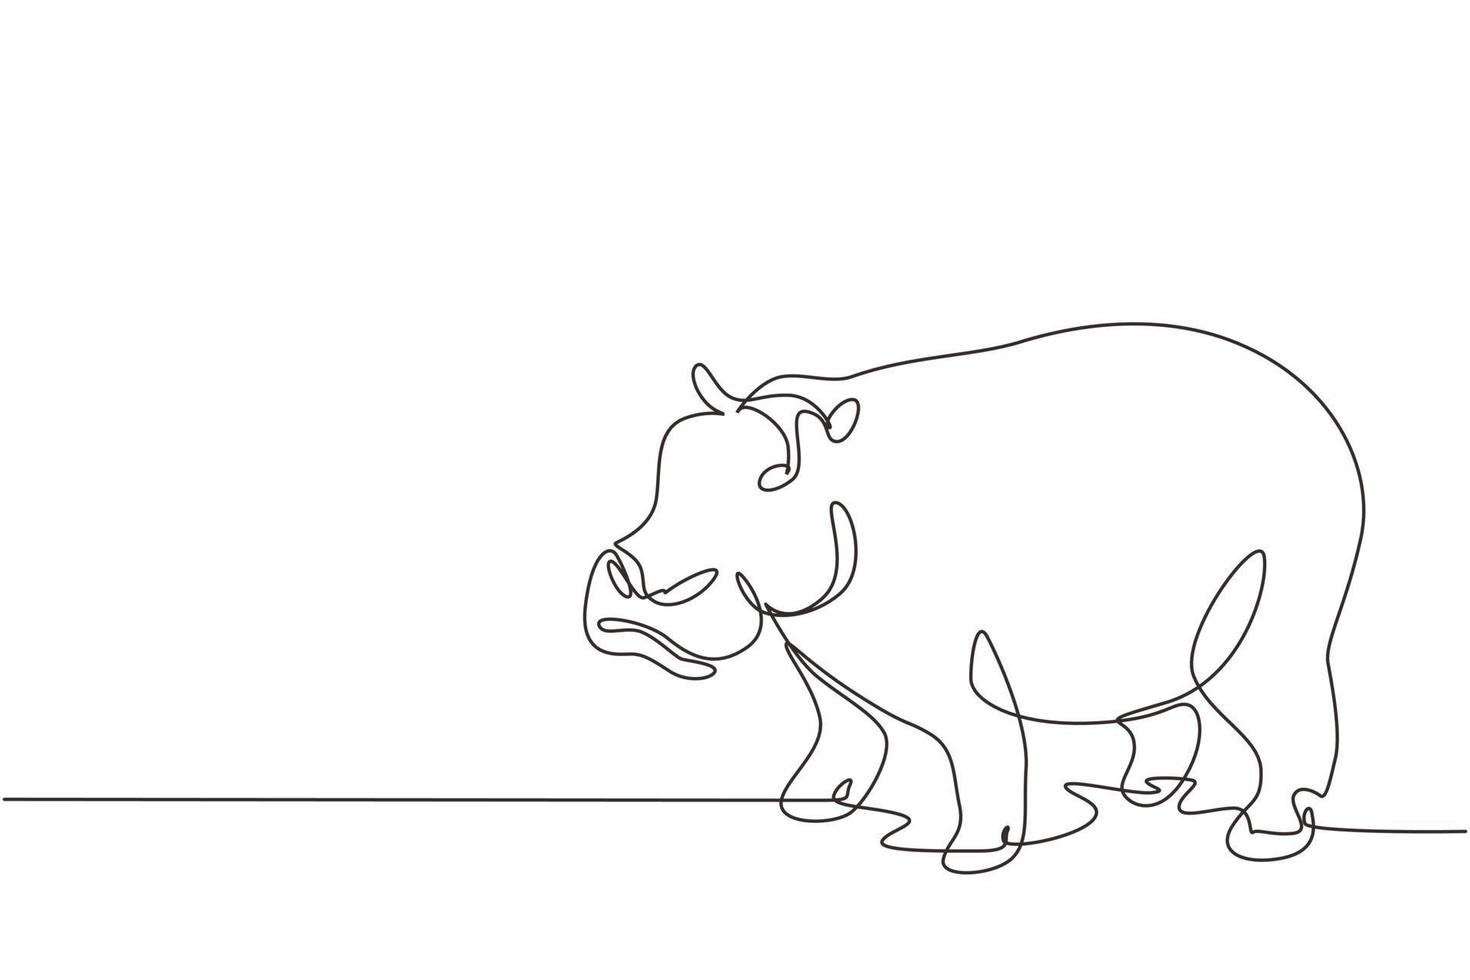 enda kontinuerlig linjeritning stor söt flodhäst för företagets logotyp identitet. enormt vilda flodhästdjurs maskotkoncept för national safari zoo. dynamisk en rad rita grafisk design vektorillustration vektor